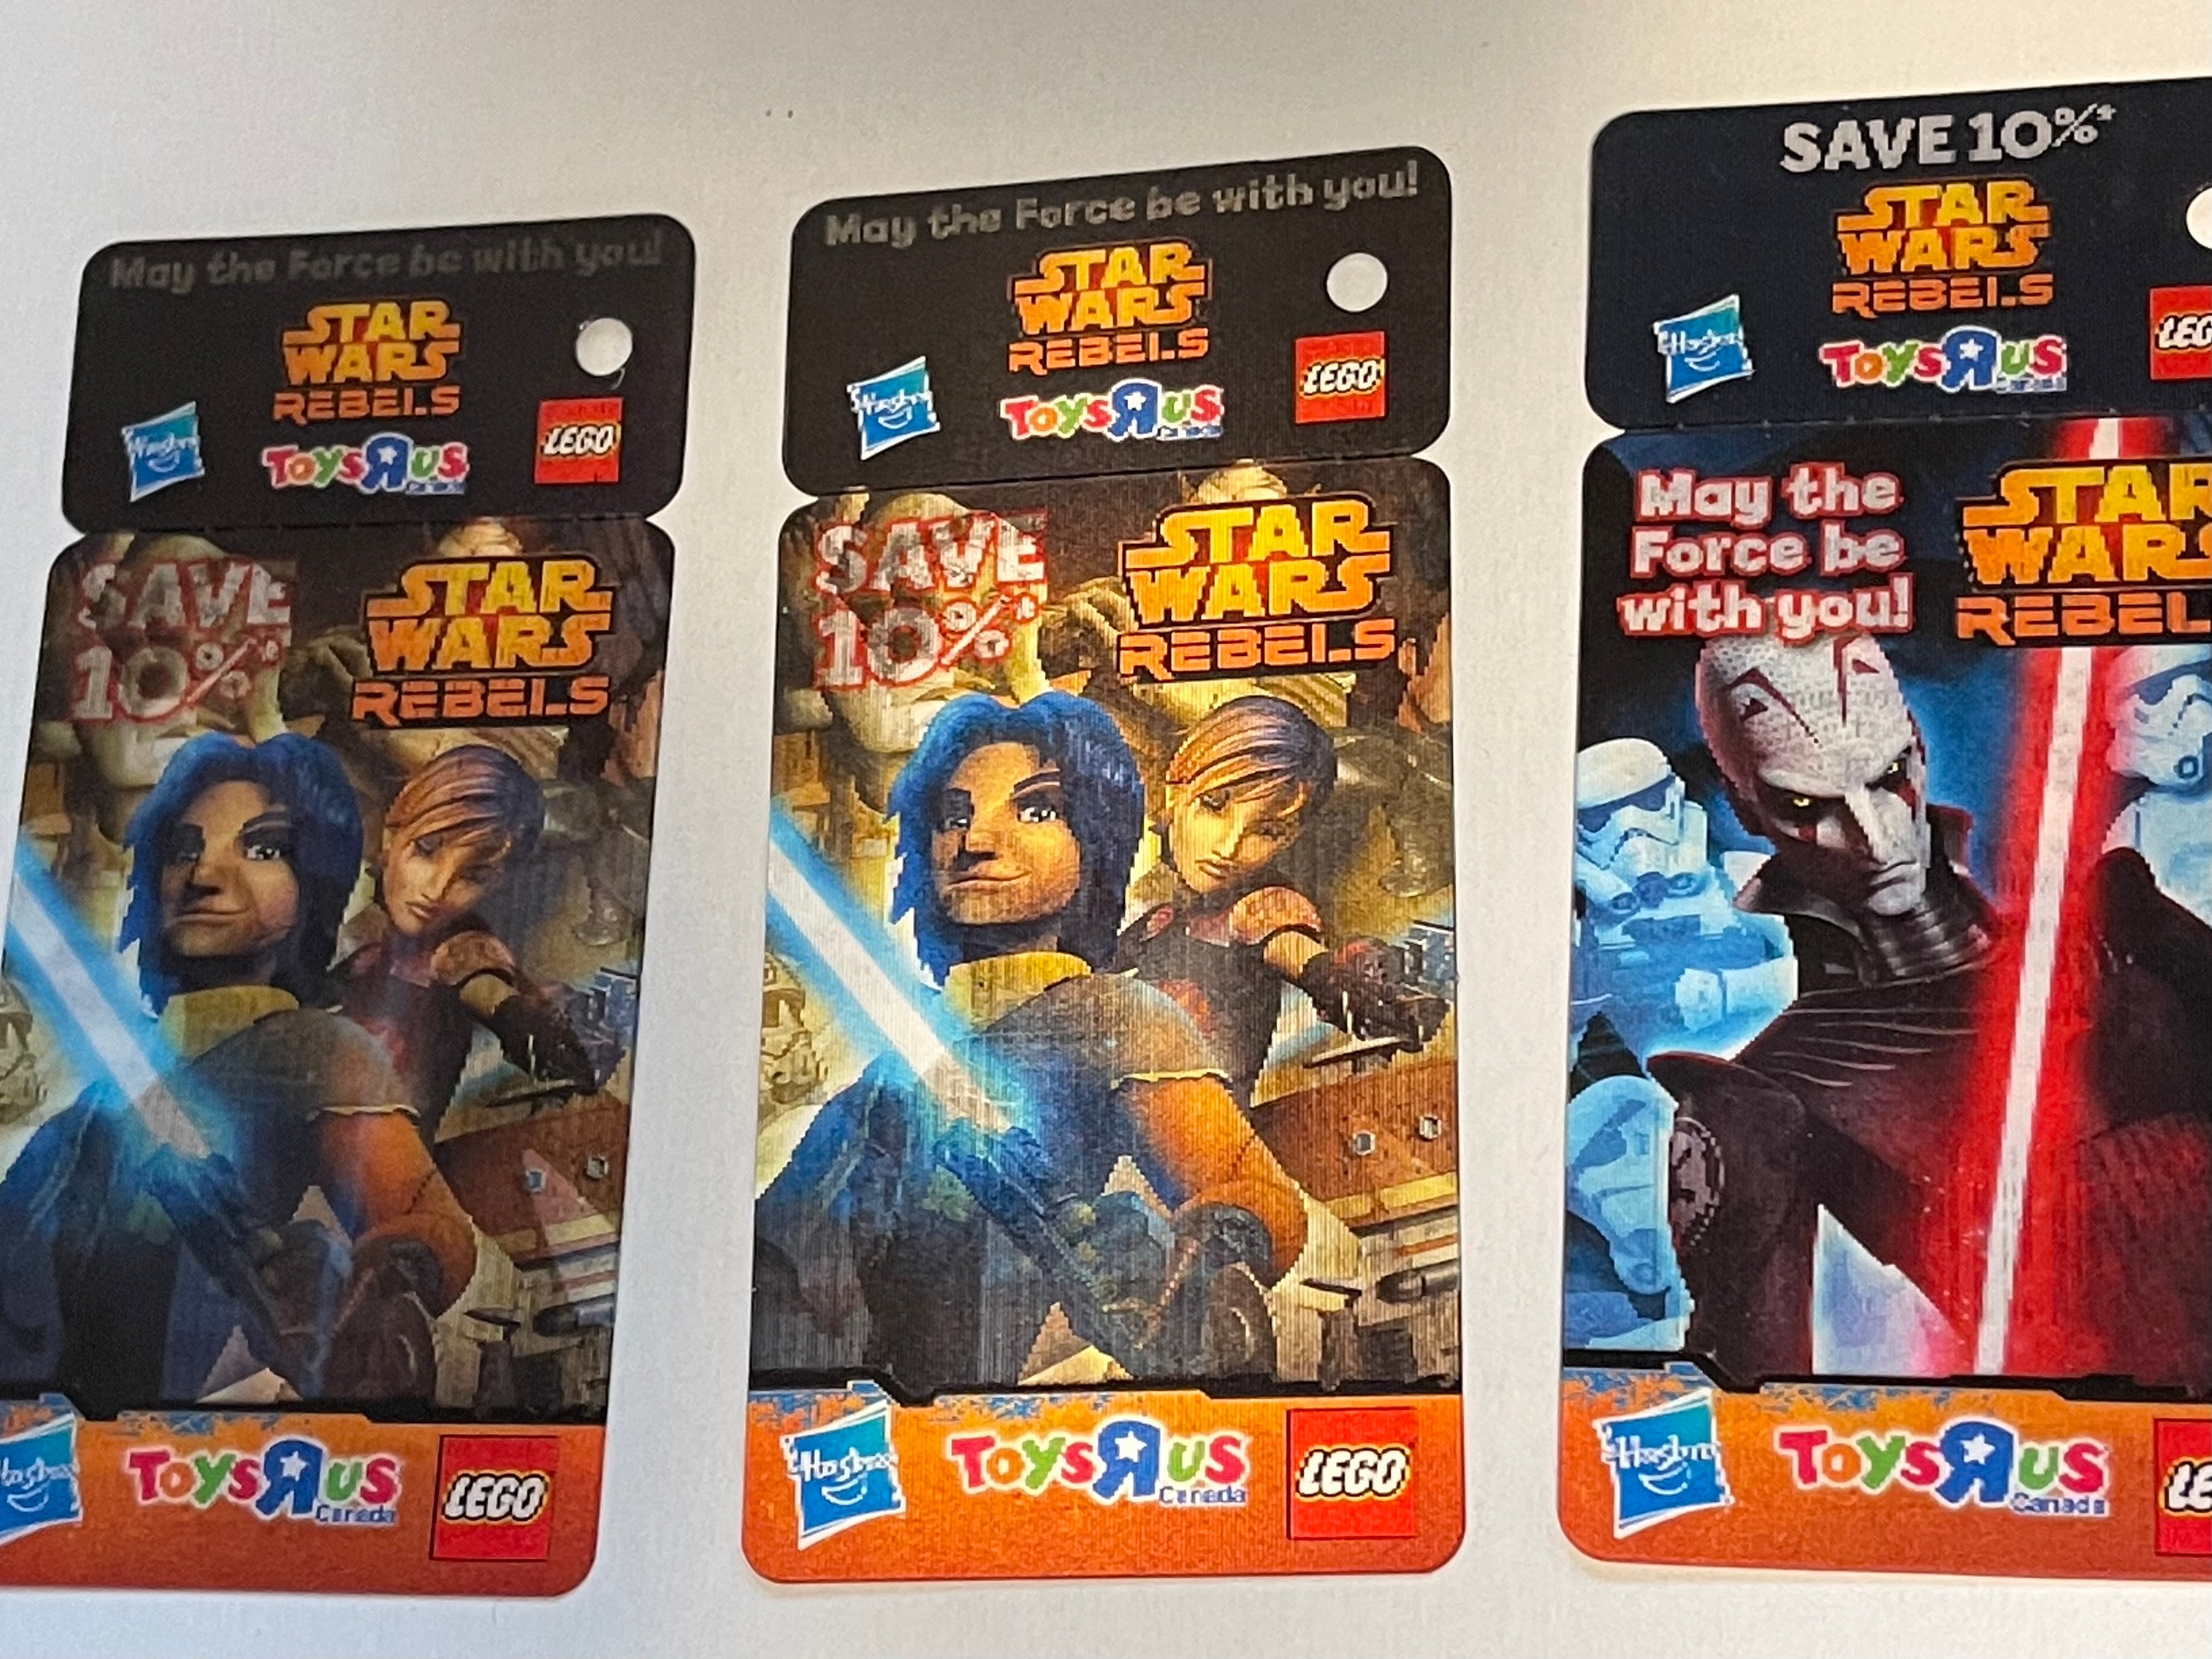 Star Wars Rebels Toys R Us 3 lenticular cards 2014